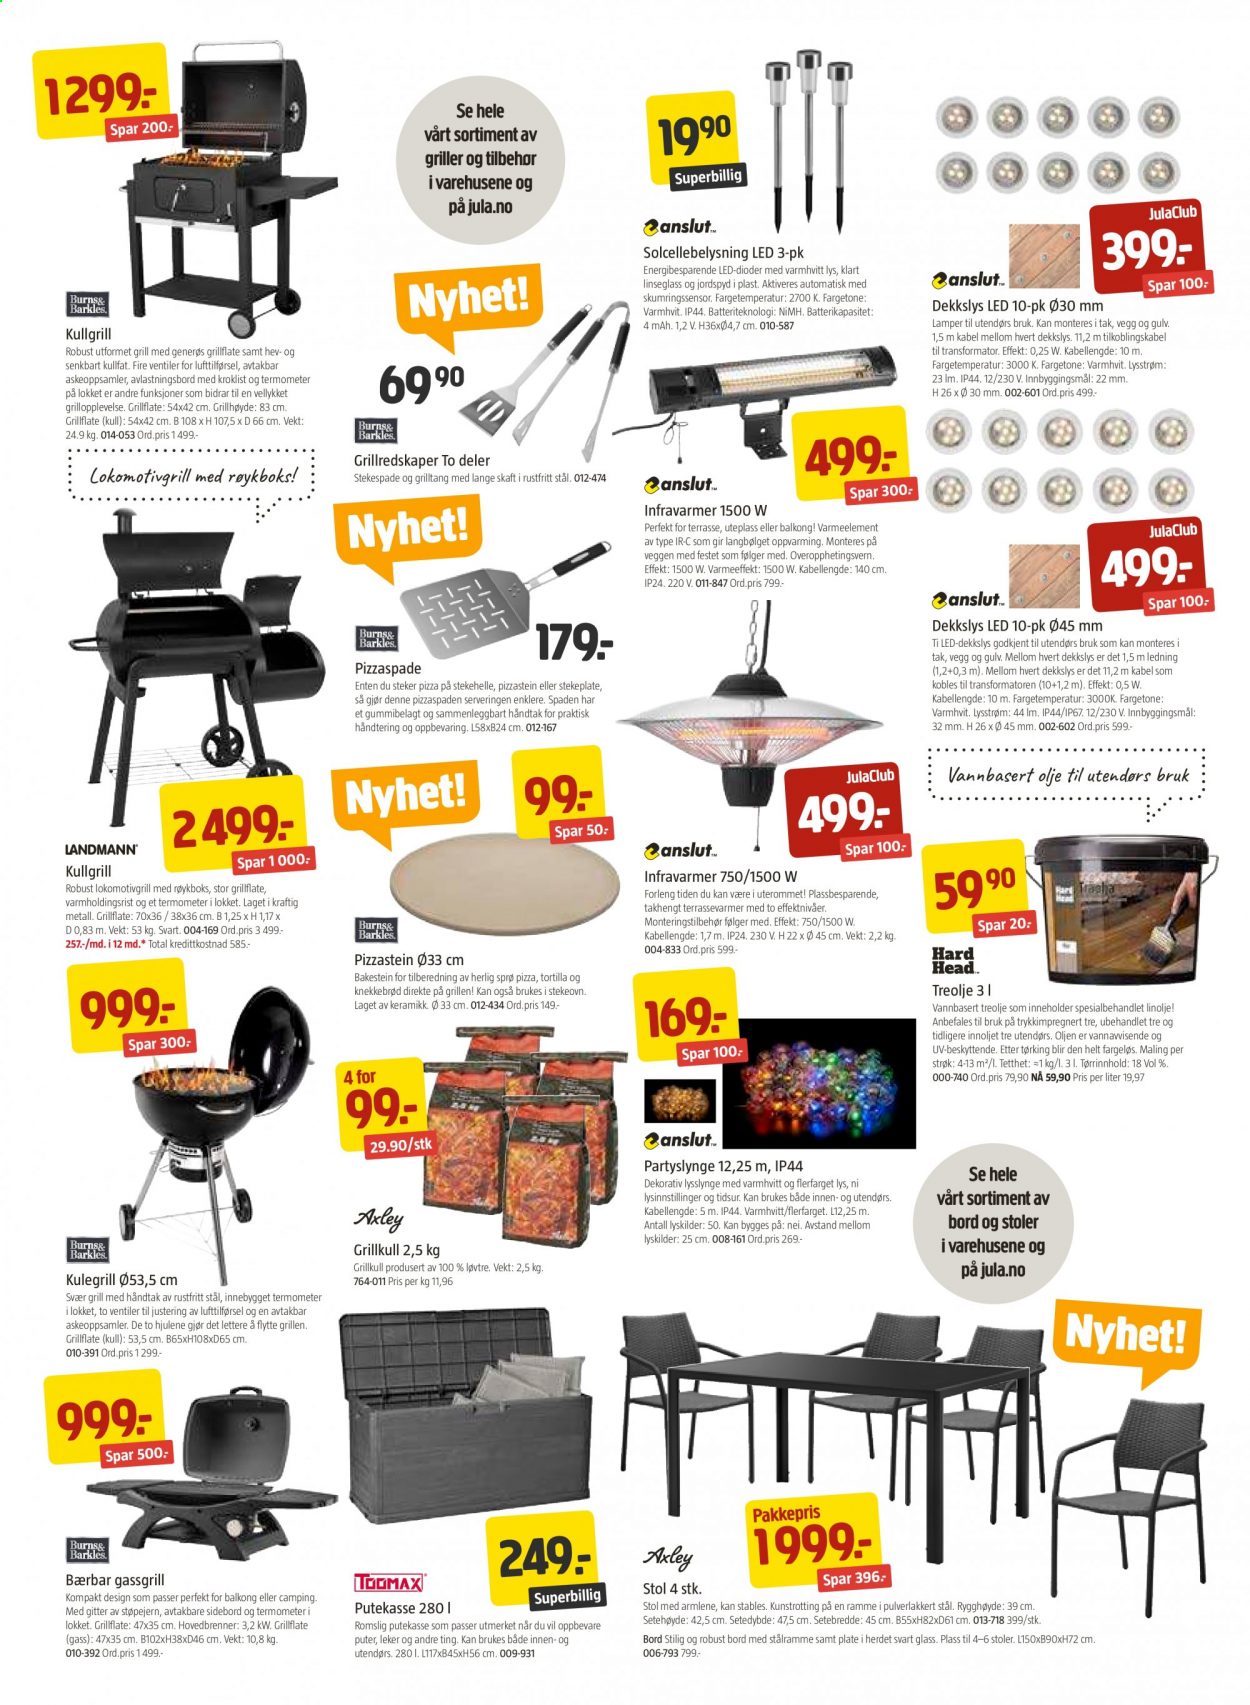 thumbnail - Kundeavis Jula - 23.4.2021 - 9.5.2021 - Produkter fra tilbudsaviser - bord, stol, putekasse, lysslynge, gulv. Side 3.